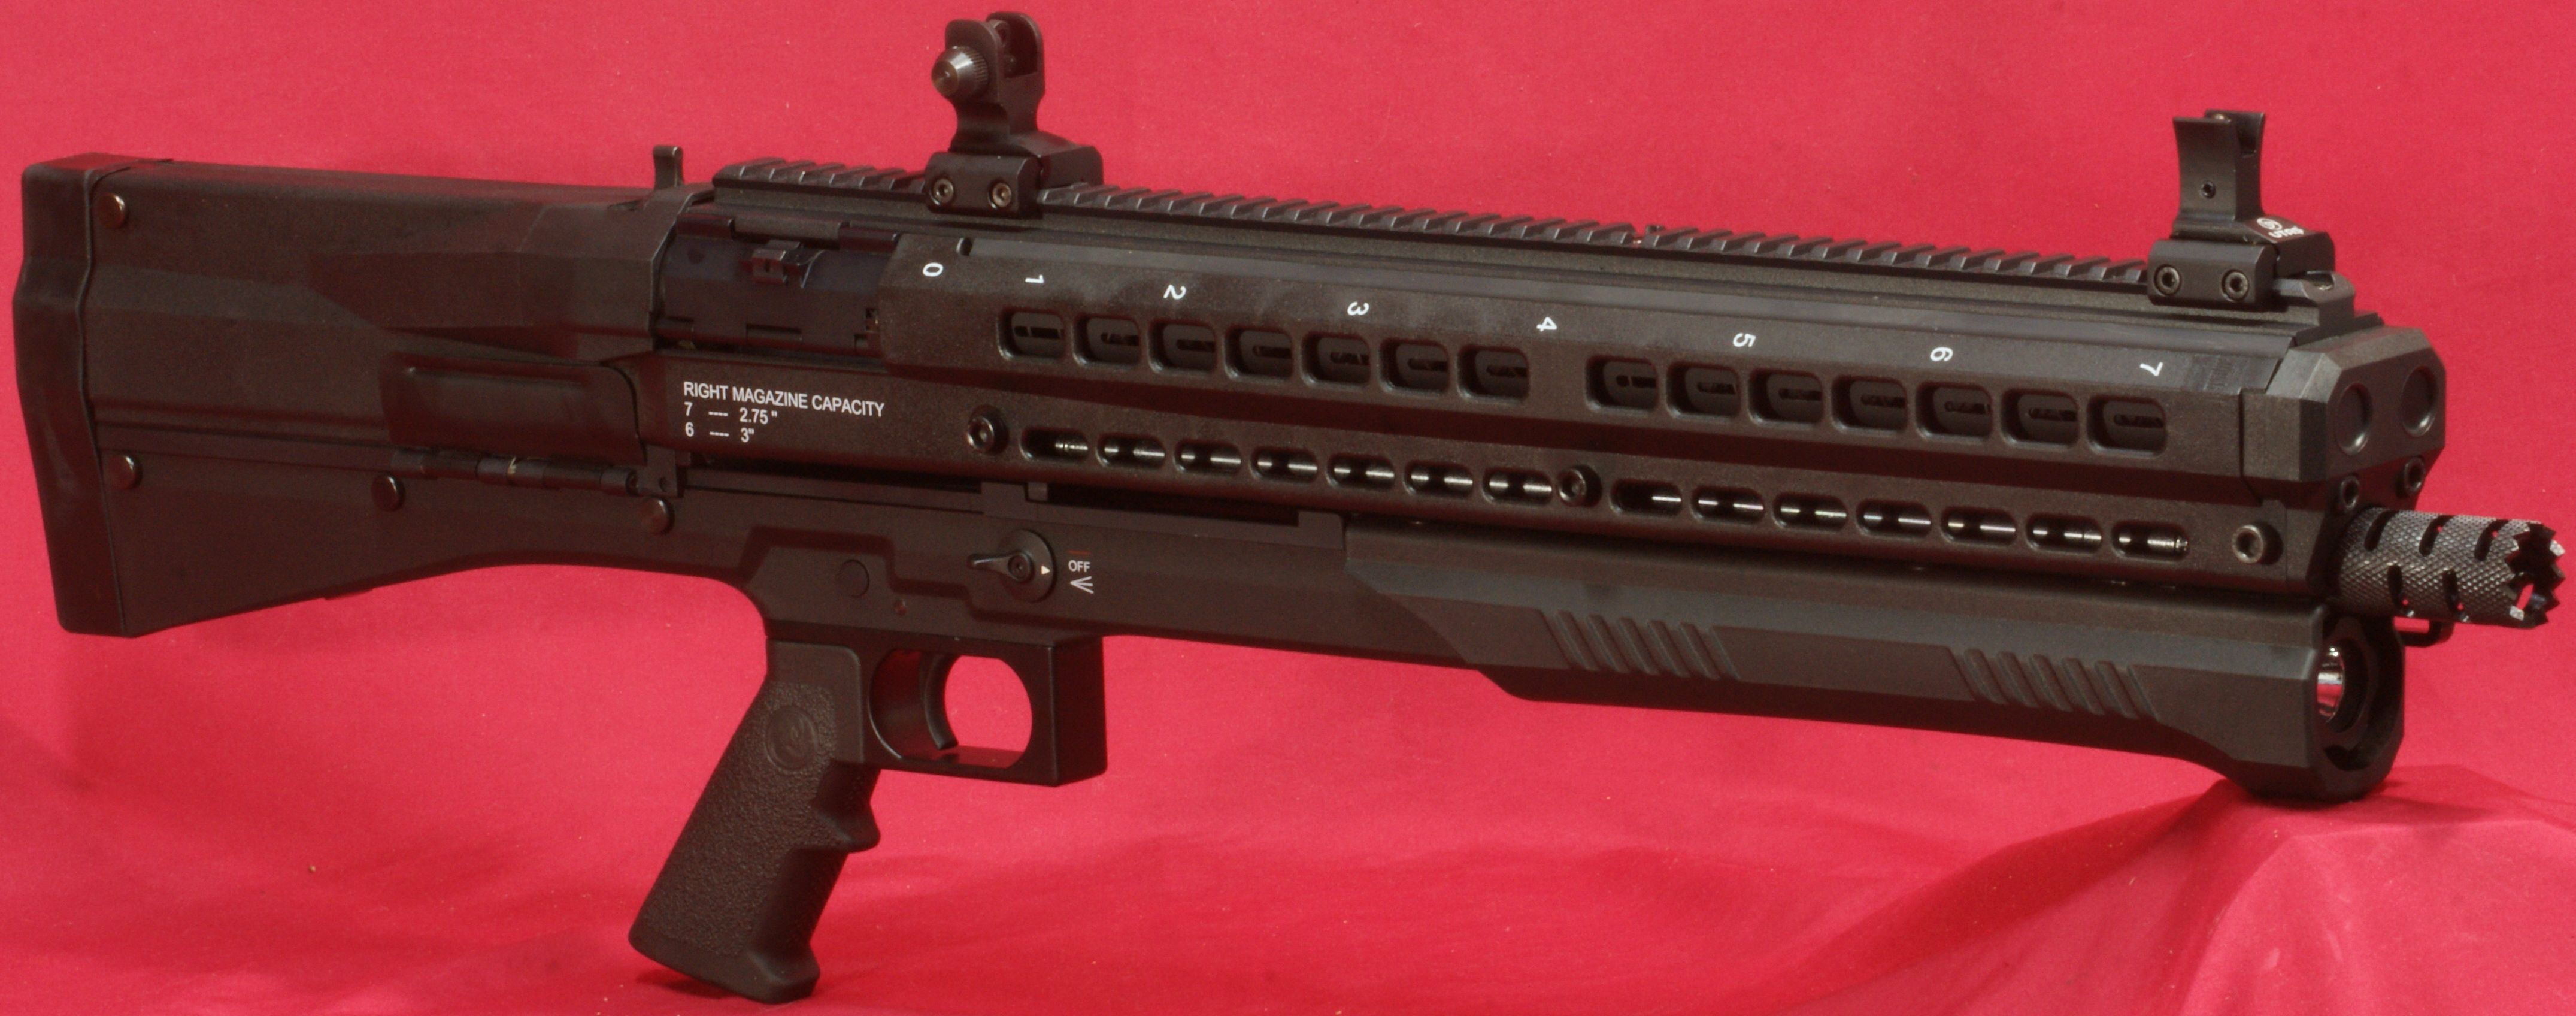 4302x1696 > Utas Uts-15 Tactical Shotgun Wallpapers